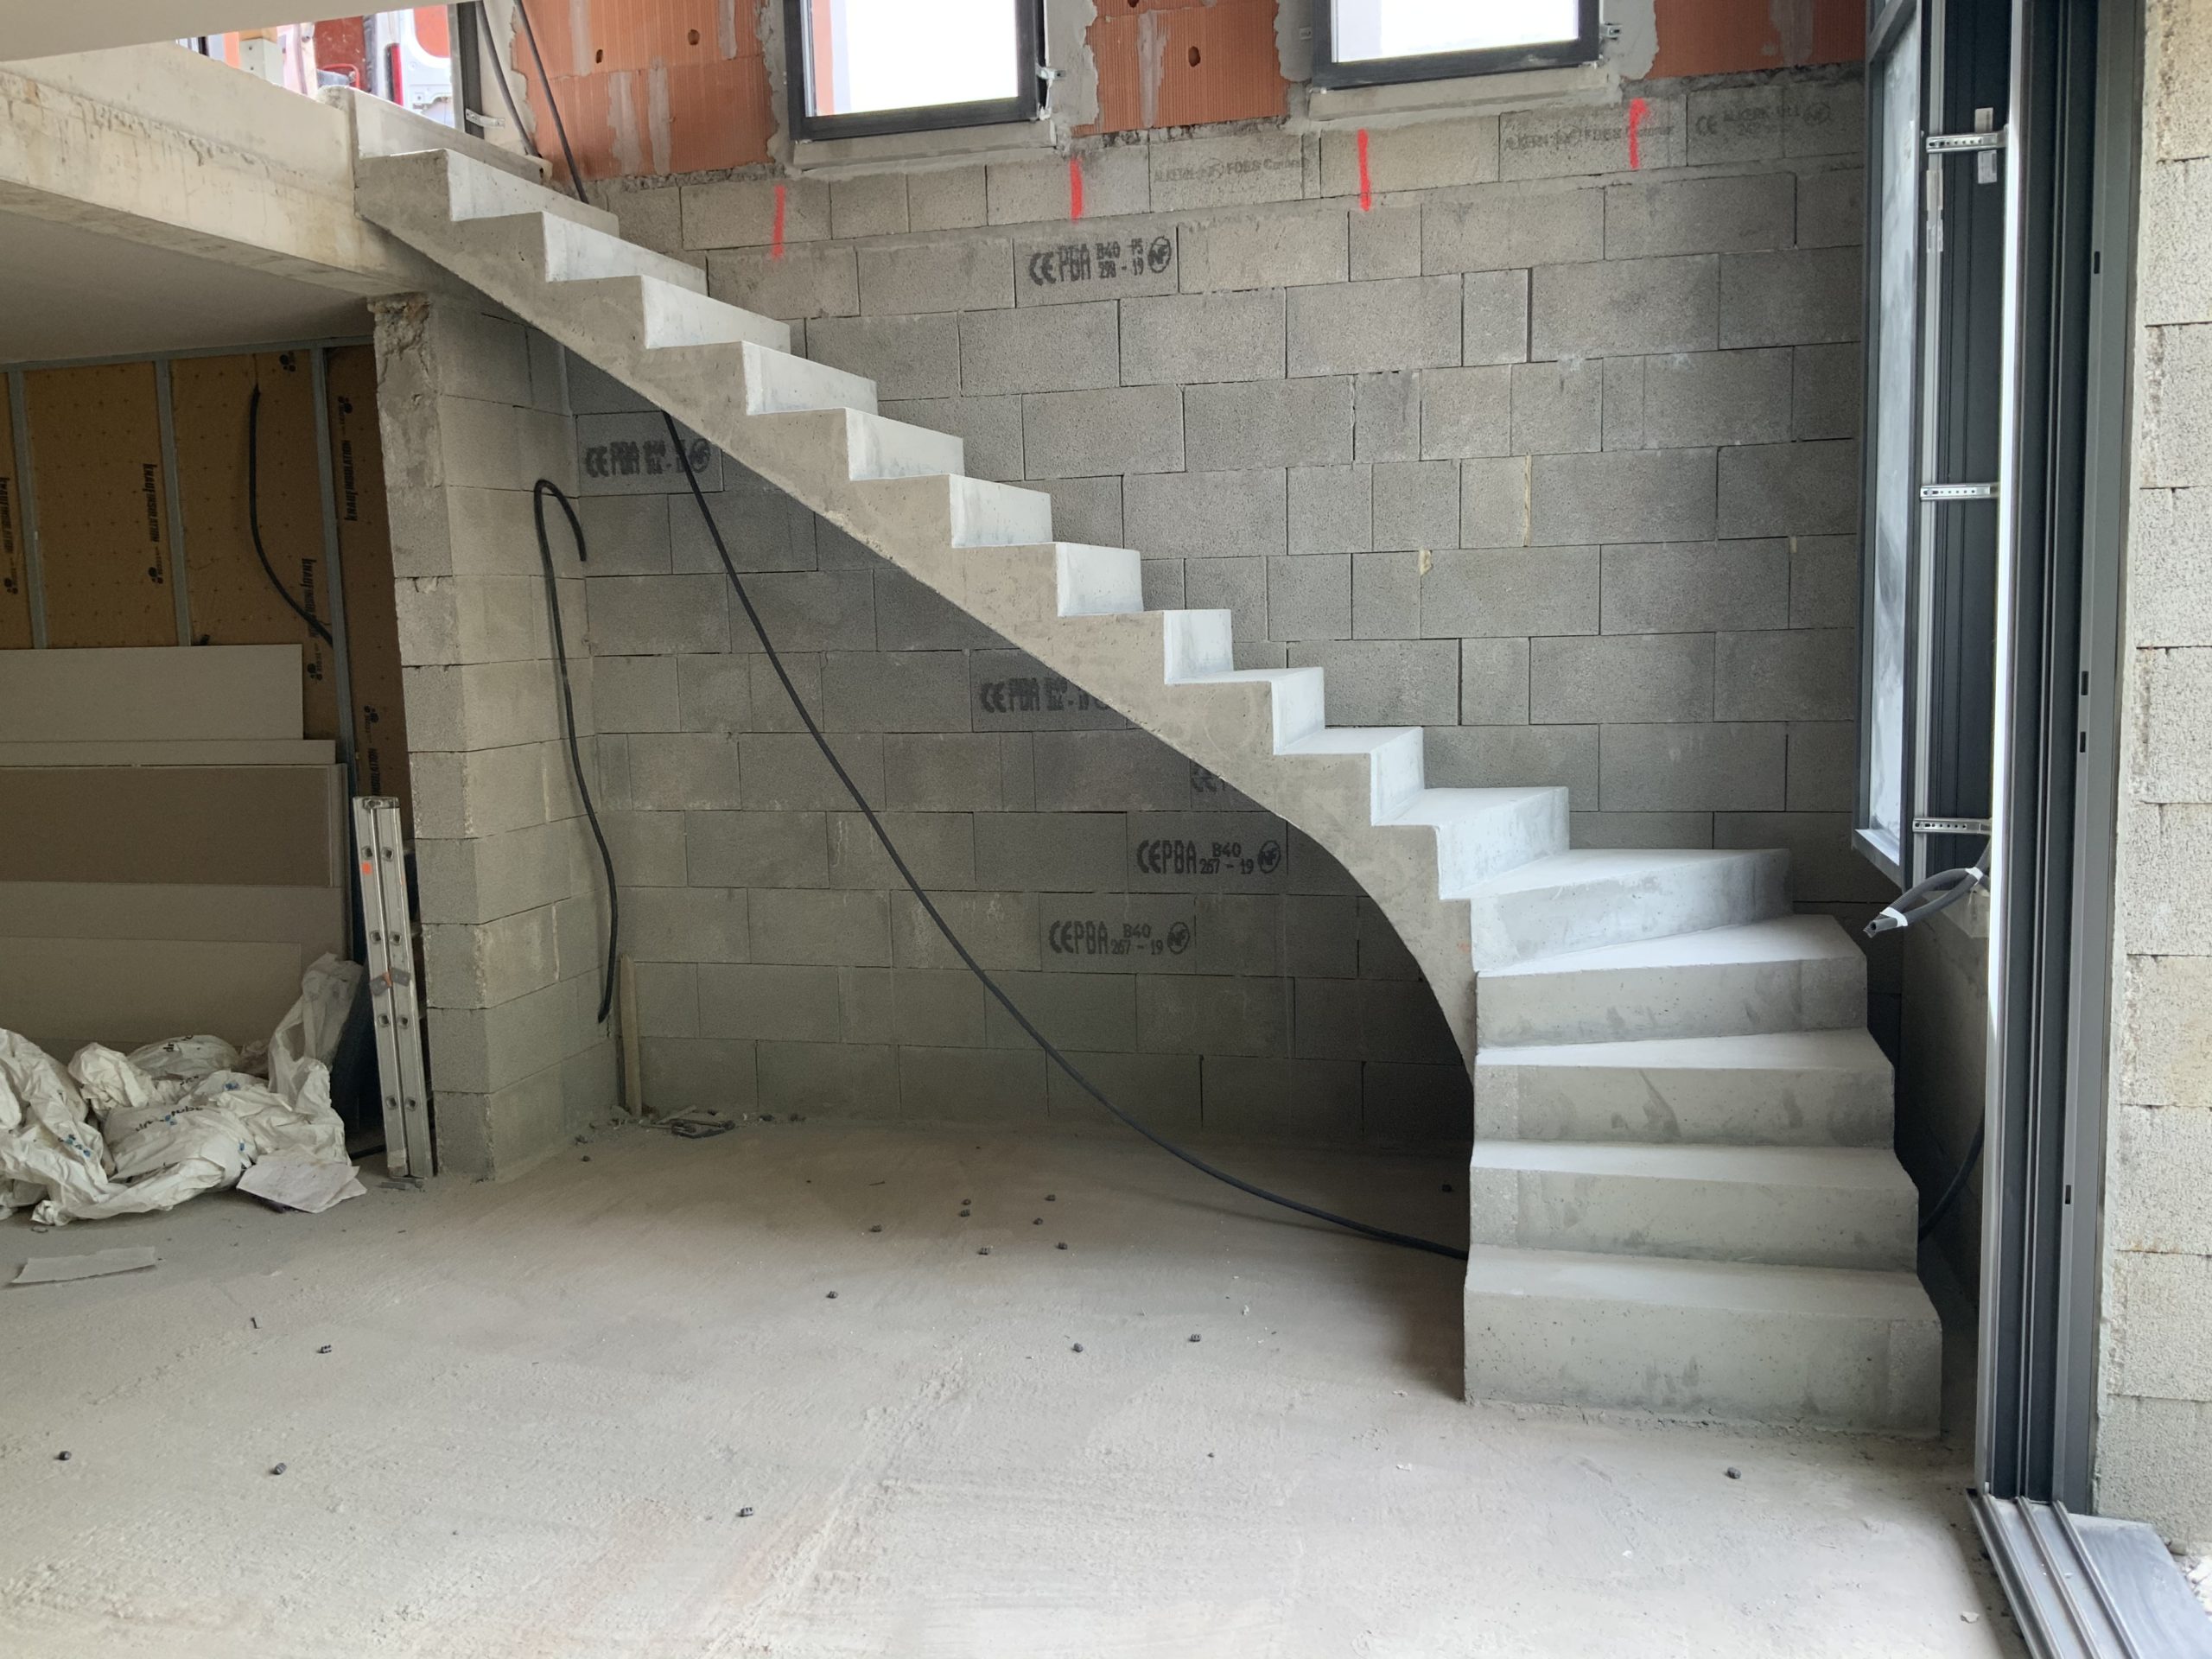 Escalier beton dans le pays basque